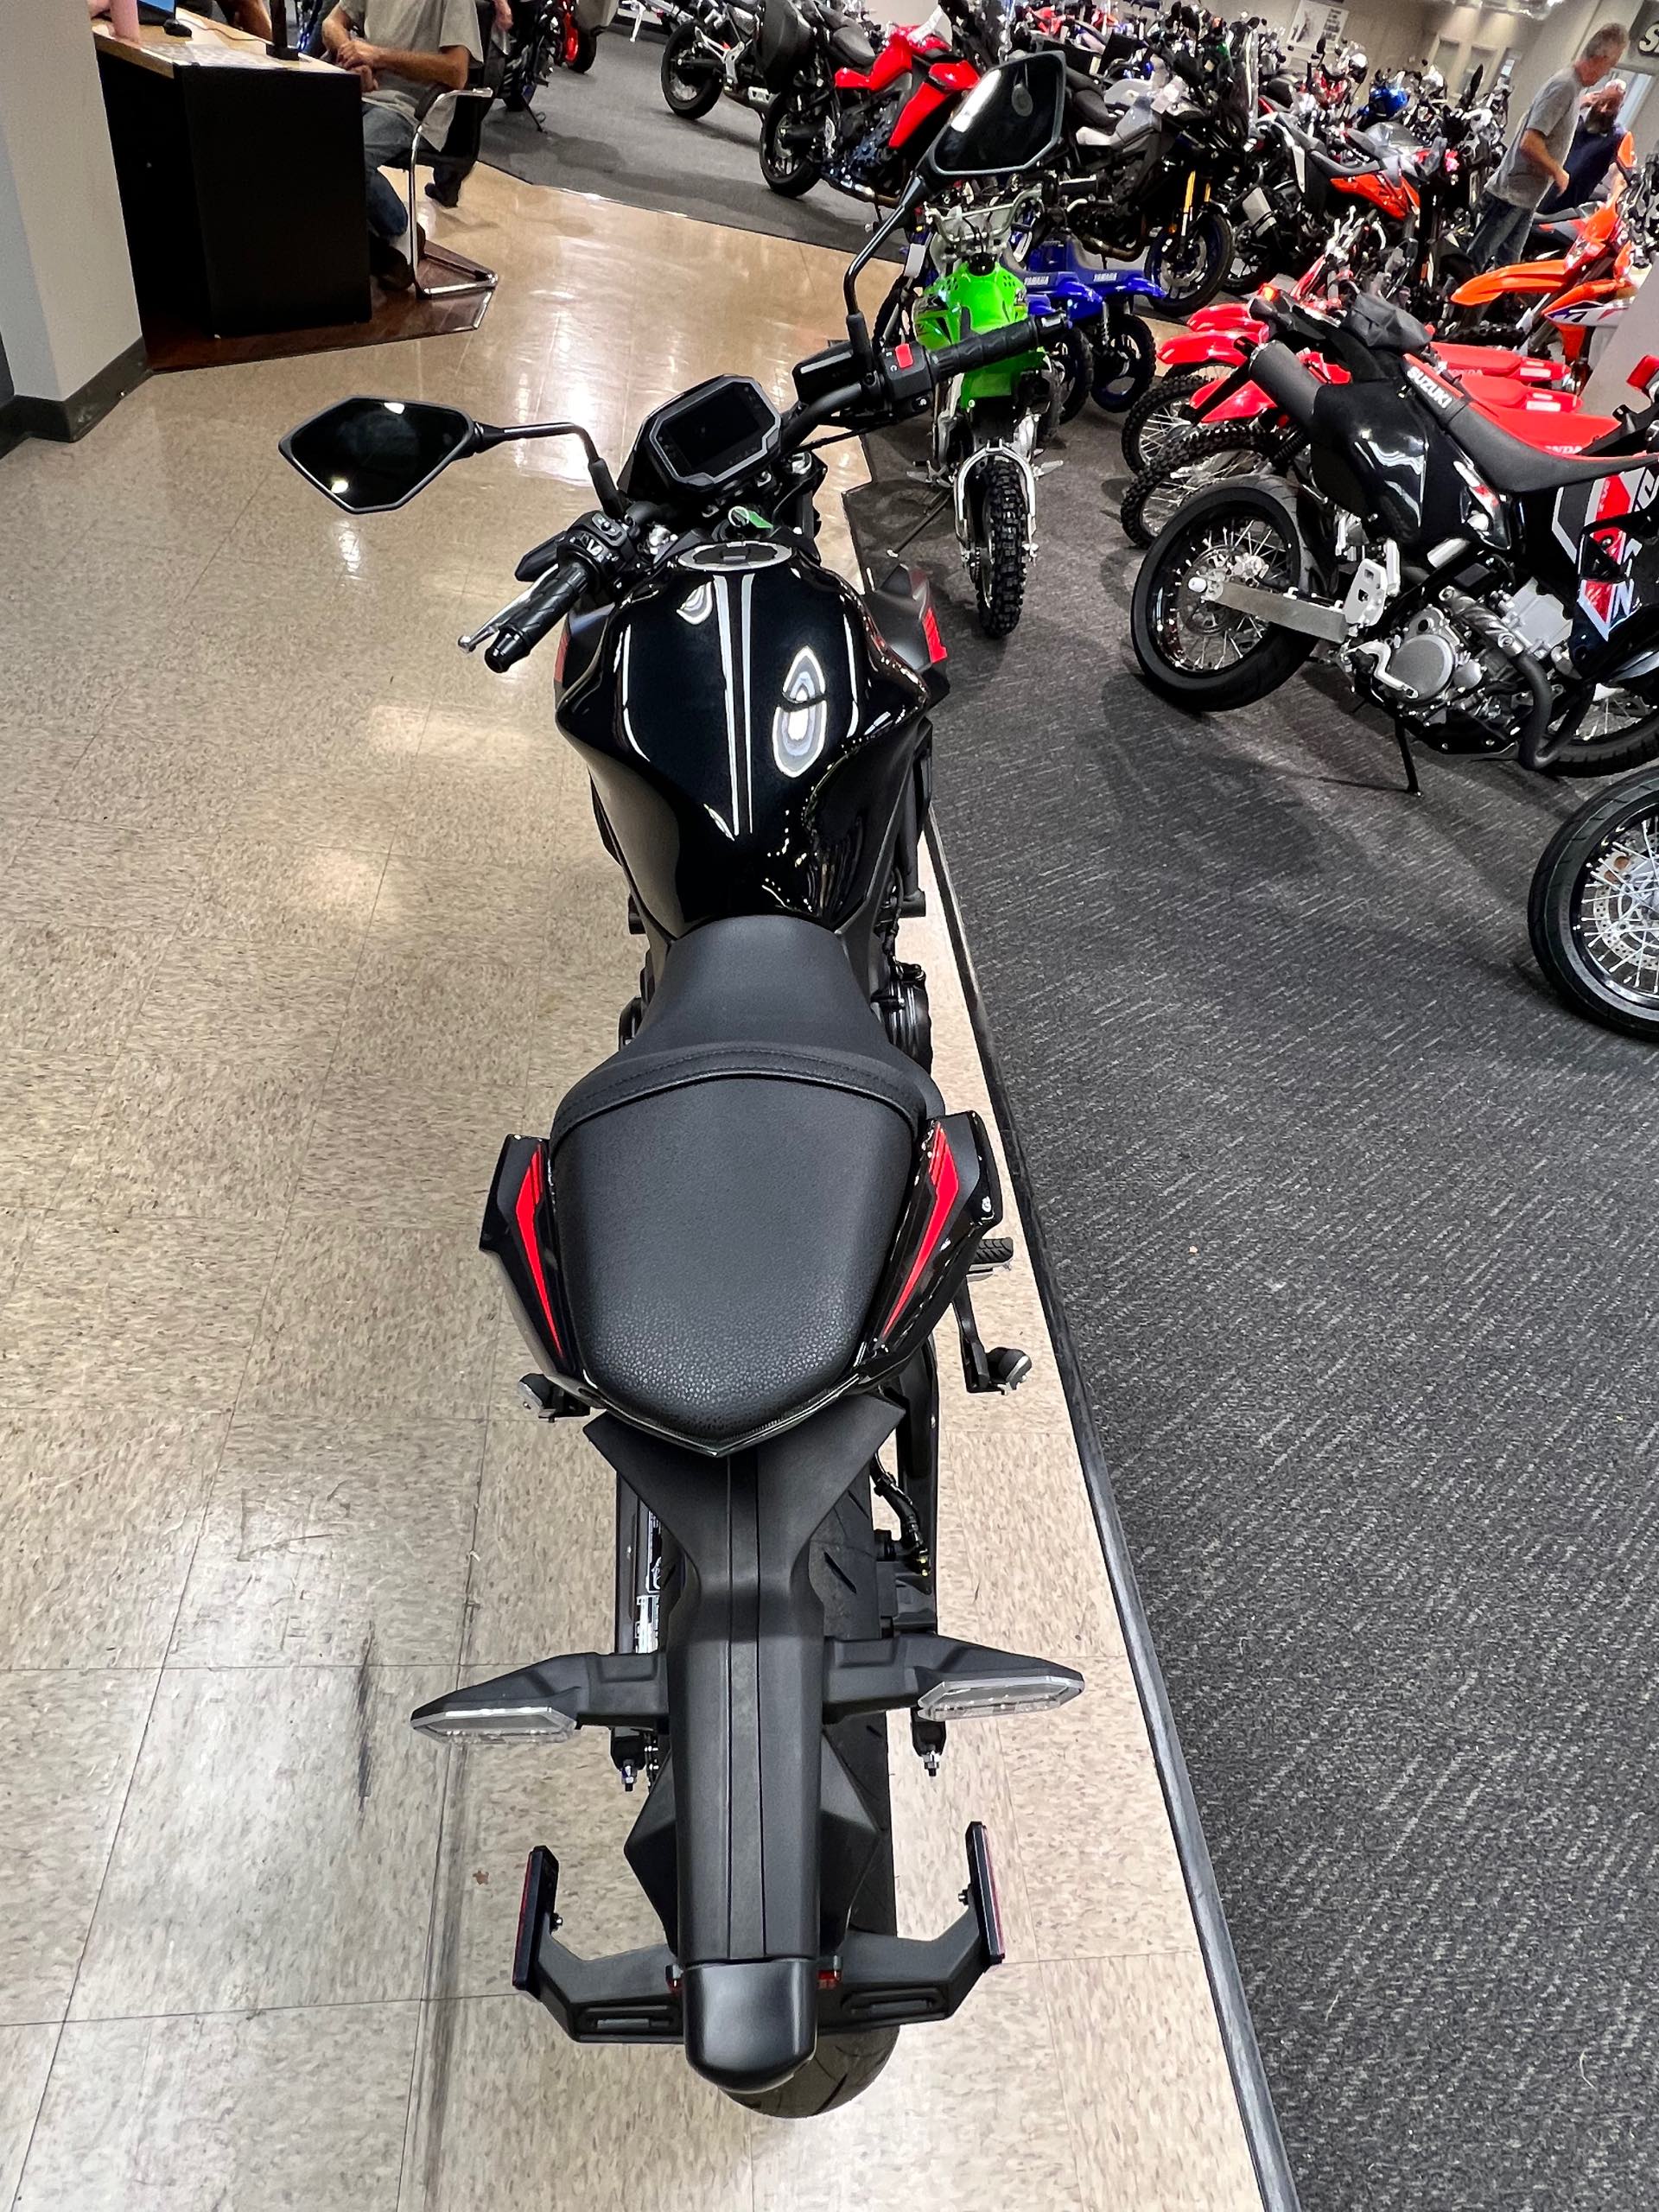 2023 Kawasaki Z650 Base at Sloans Motorcycle ATV, Murfreesboro, TN, 37129